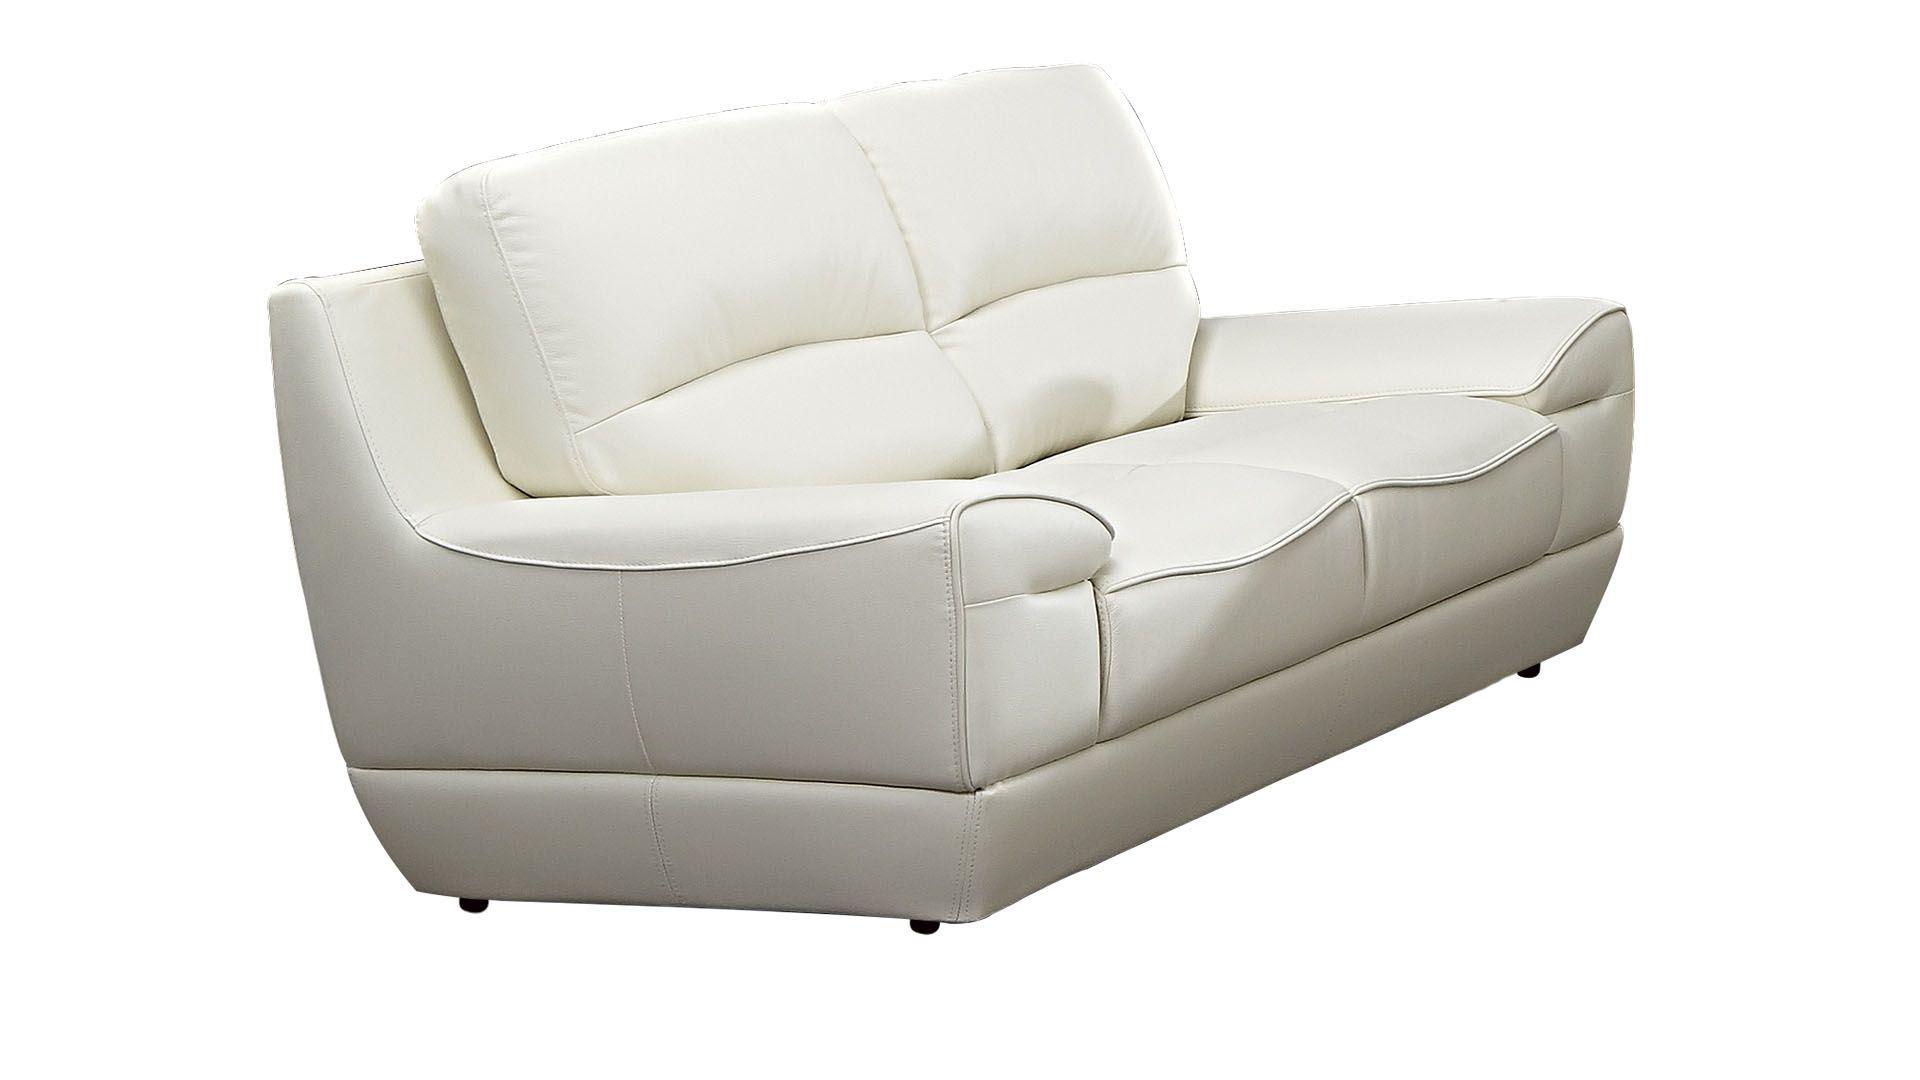 Contemporary, Modern Loveseat EK018-W-LS EK018-W-LS in White Italian Leather